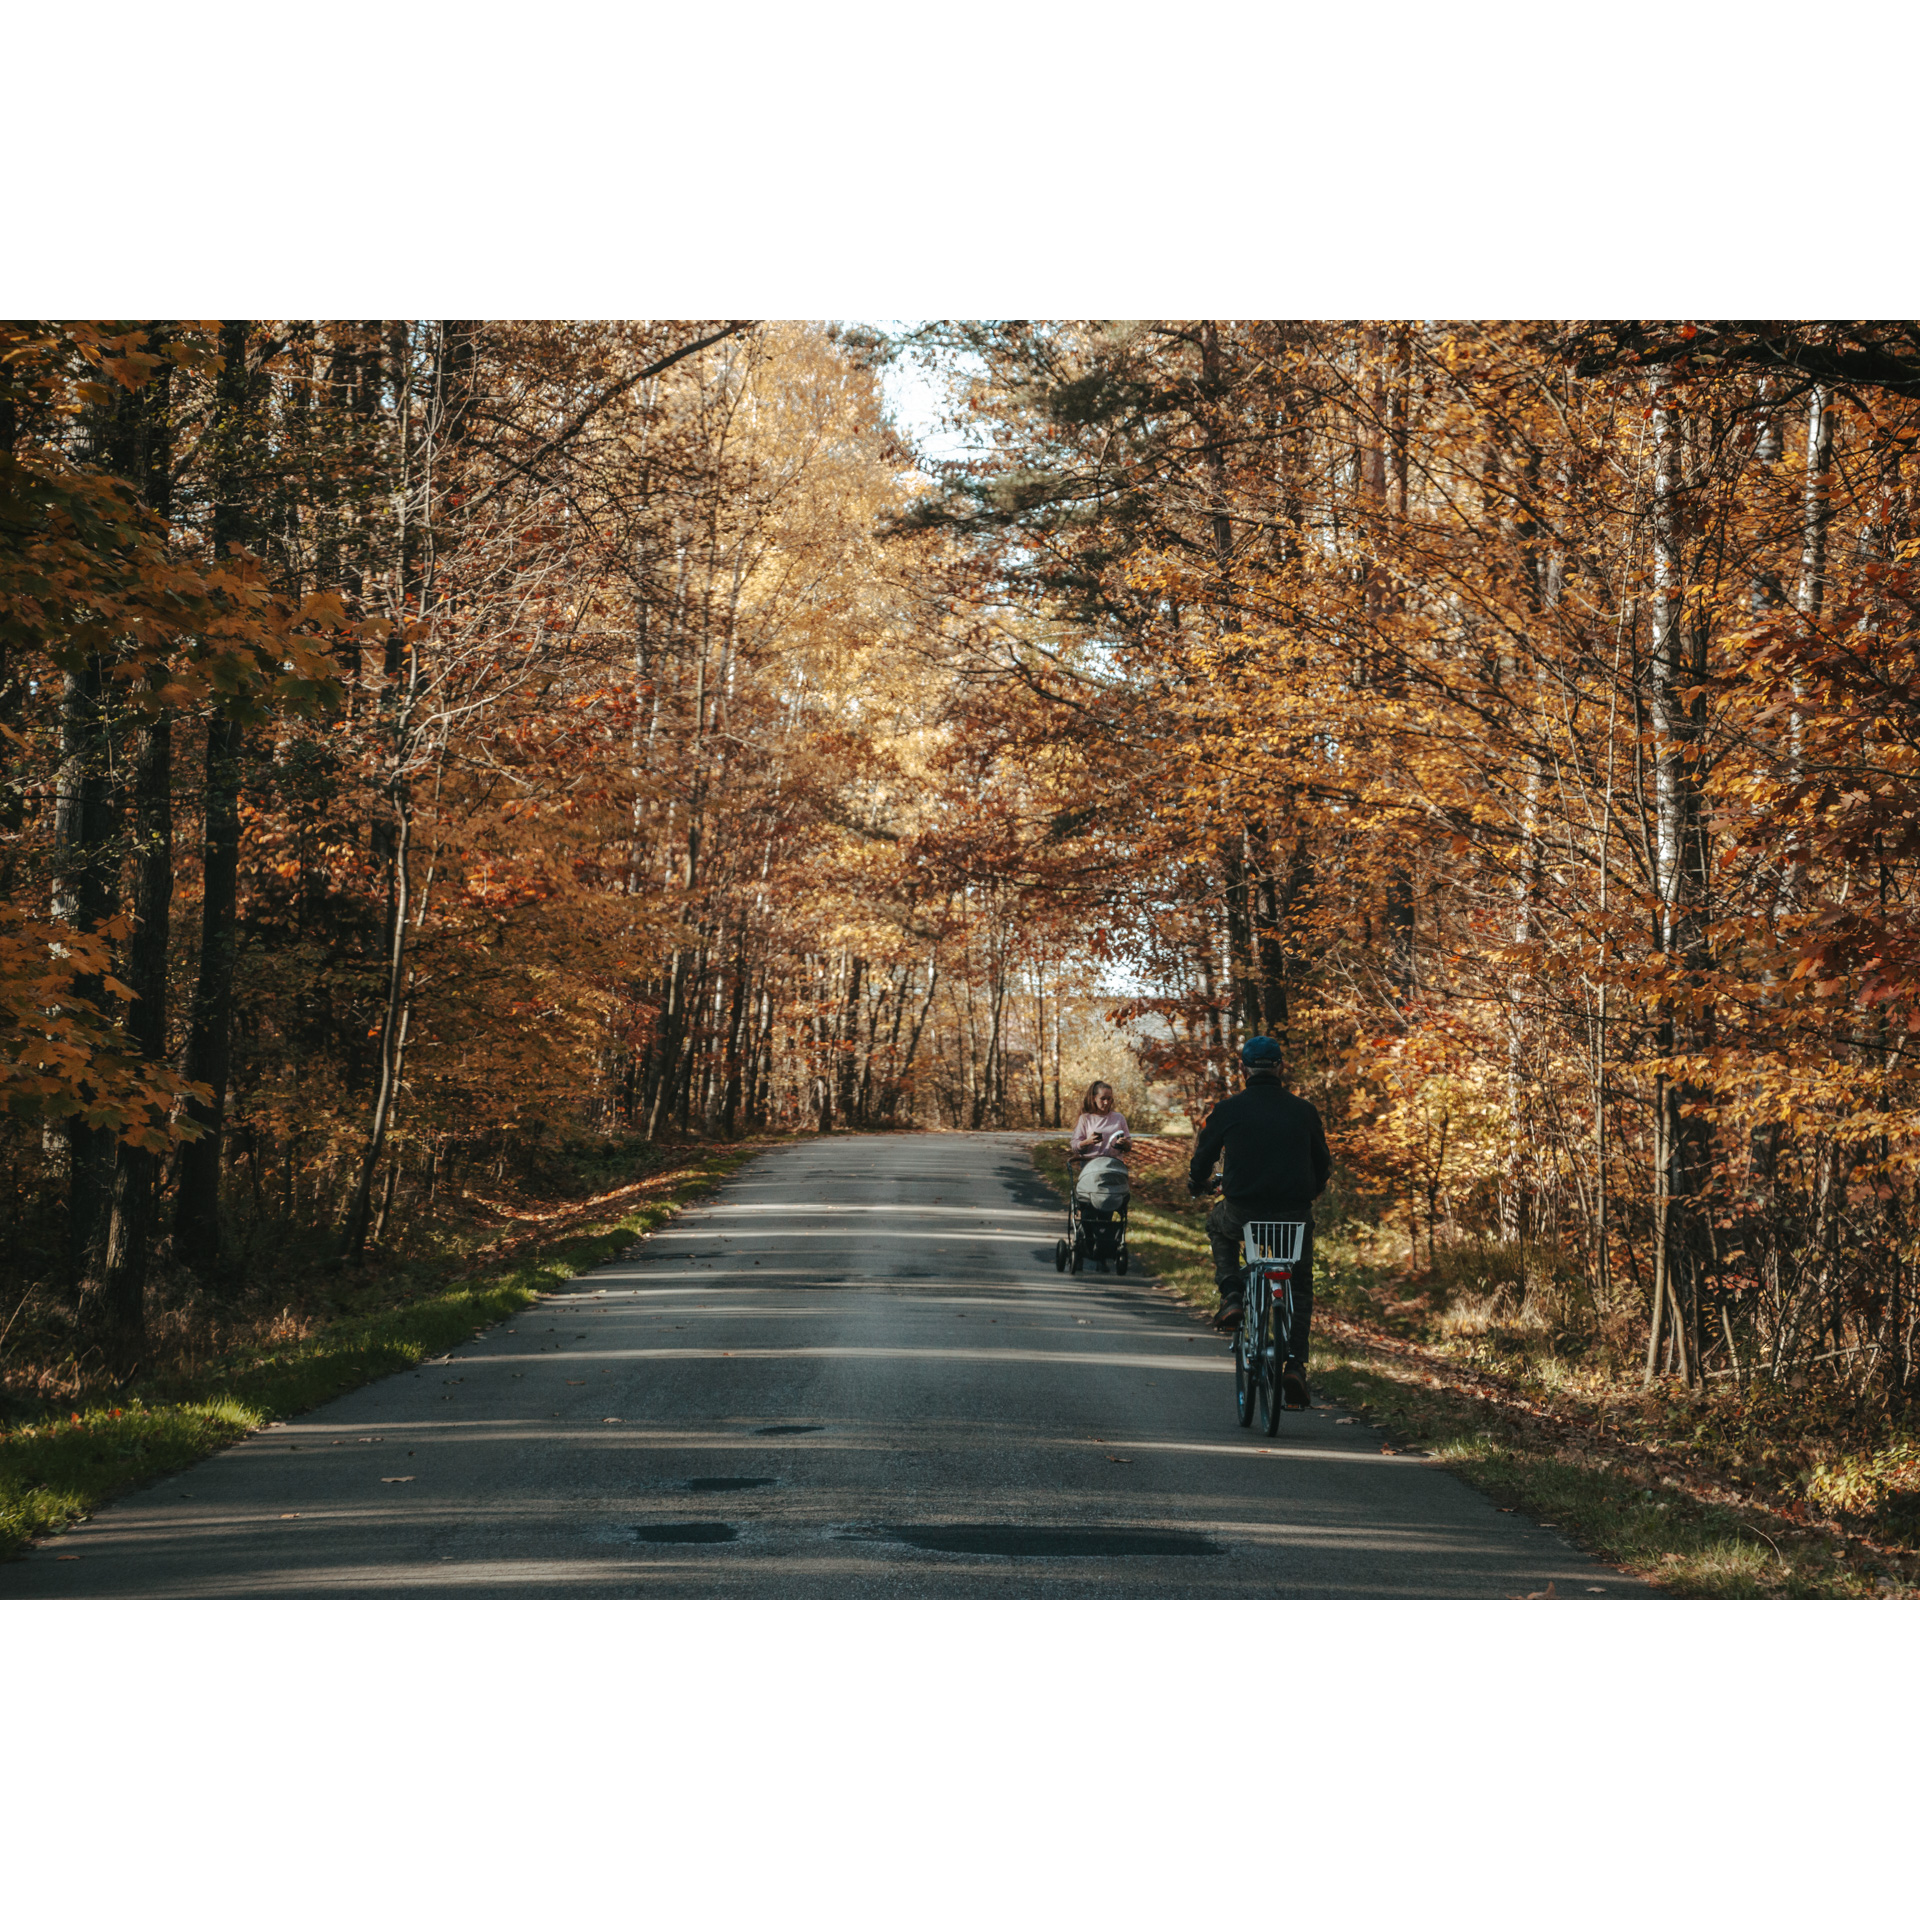 Mężczyzna na rowerze jadący leśną asfaltową drogą w stronę kobiety prowadzącej wózek dziecięcy, wokół brązowe drzewa